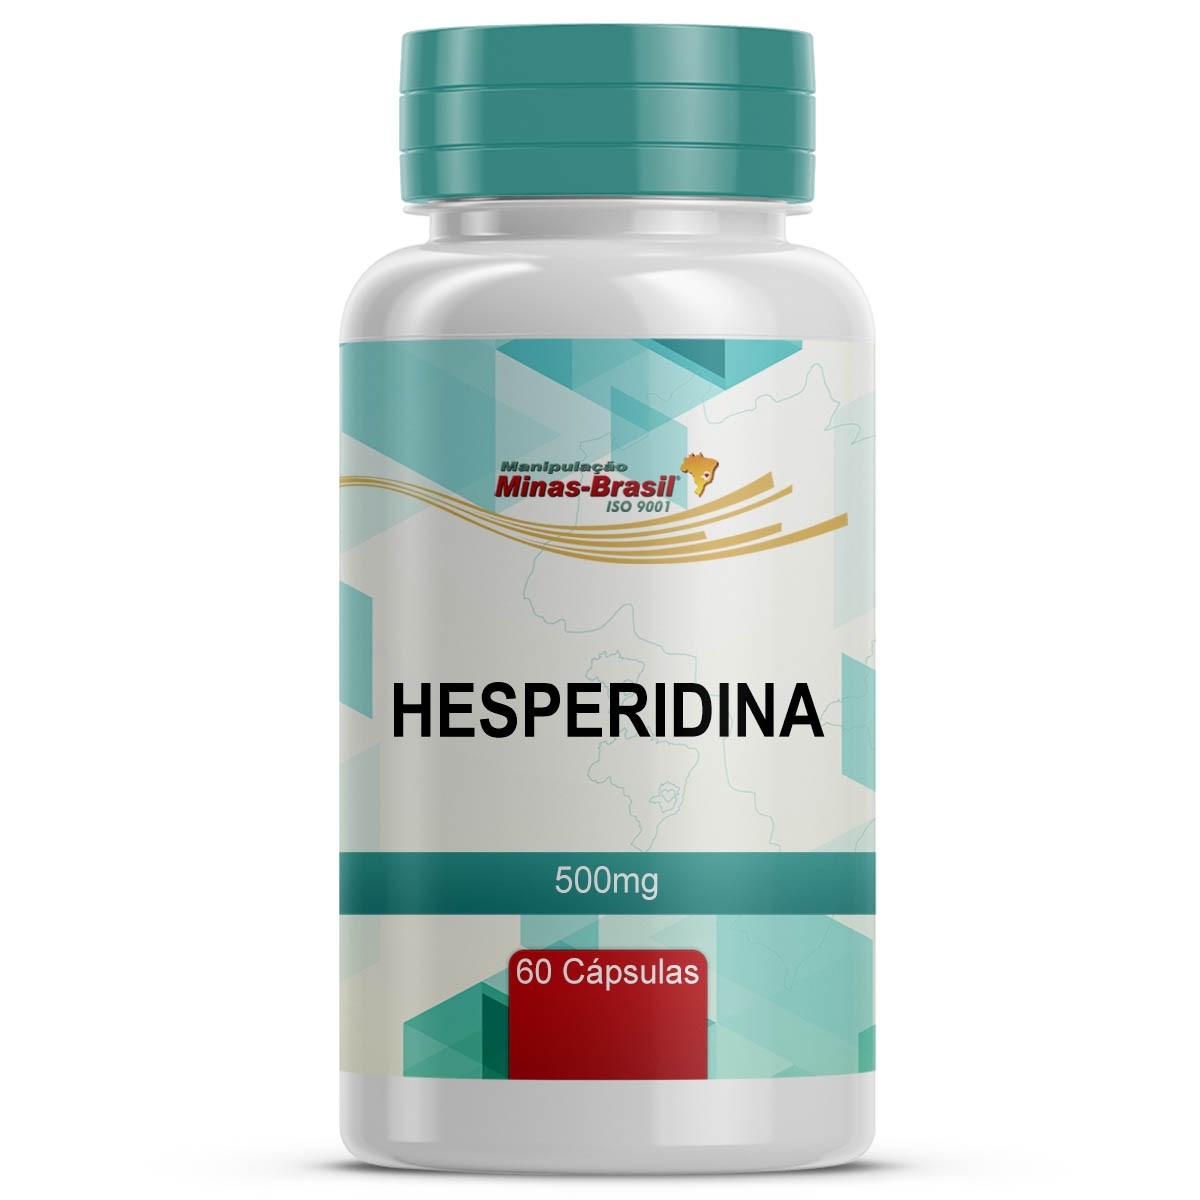 hesperidina